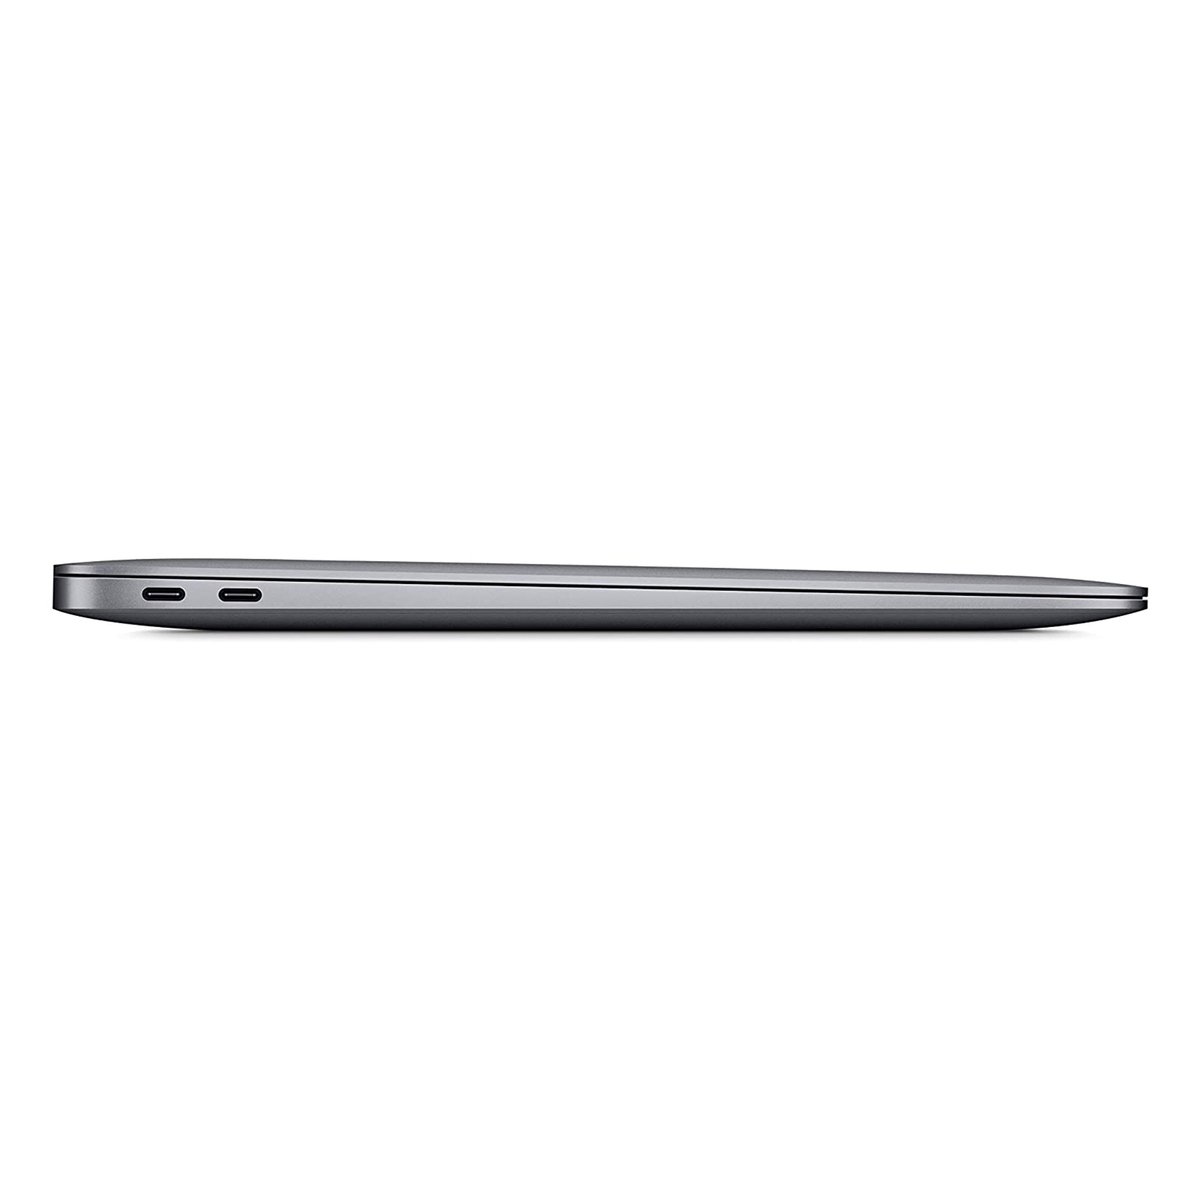 Apple Macbook Air 2020 Model, (13-Inch, Intel Core i3, 1.1Ghz, 8GB, 256GB, MWTJ2), Eng-Arb-KB, Space Grey